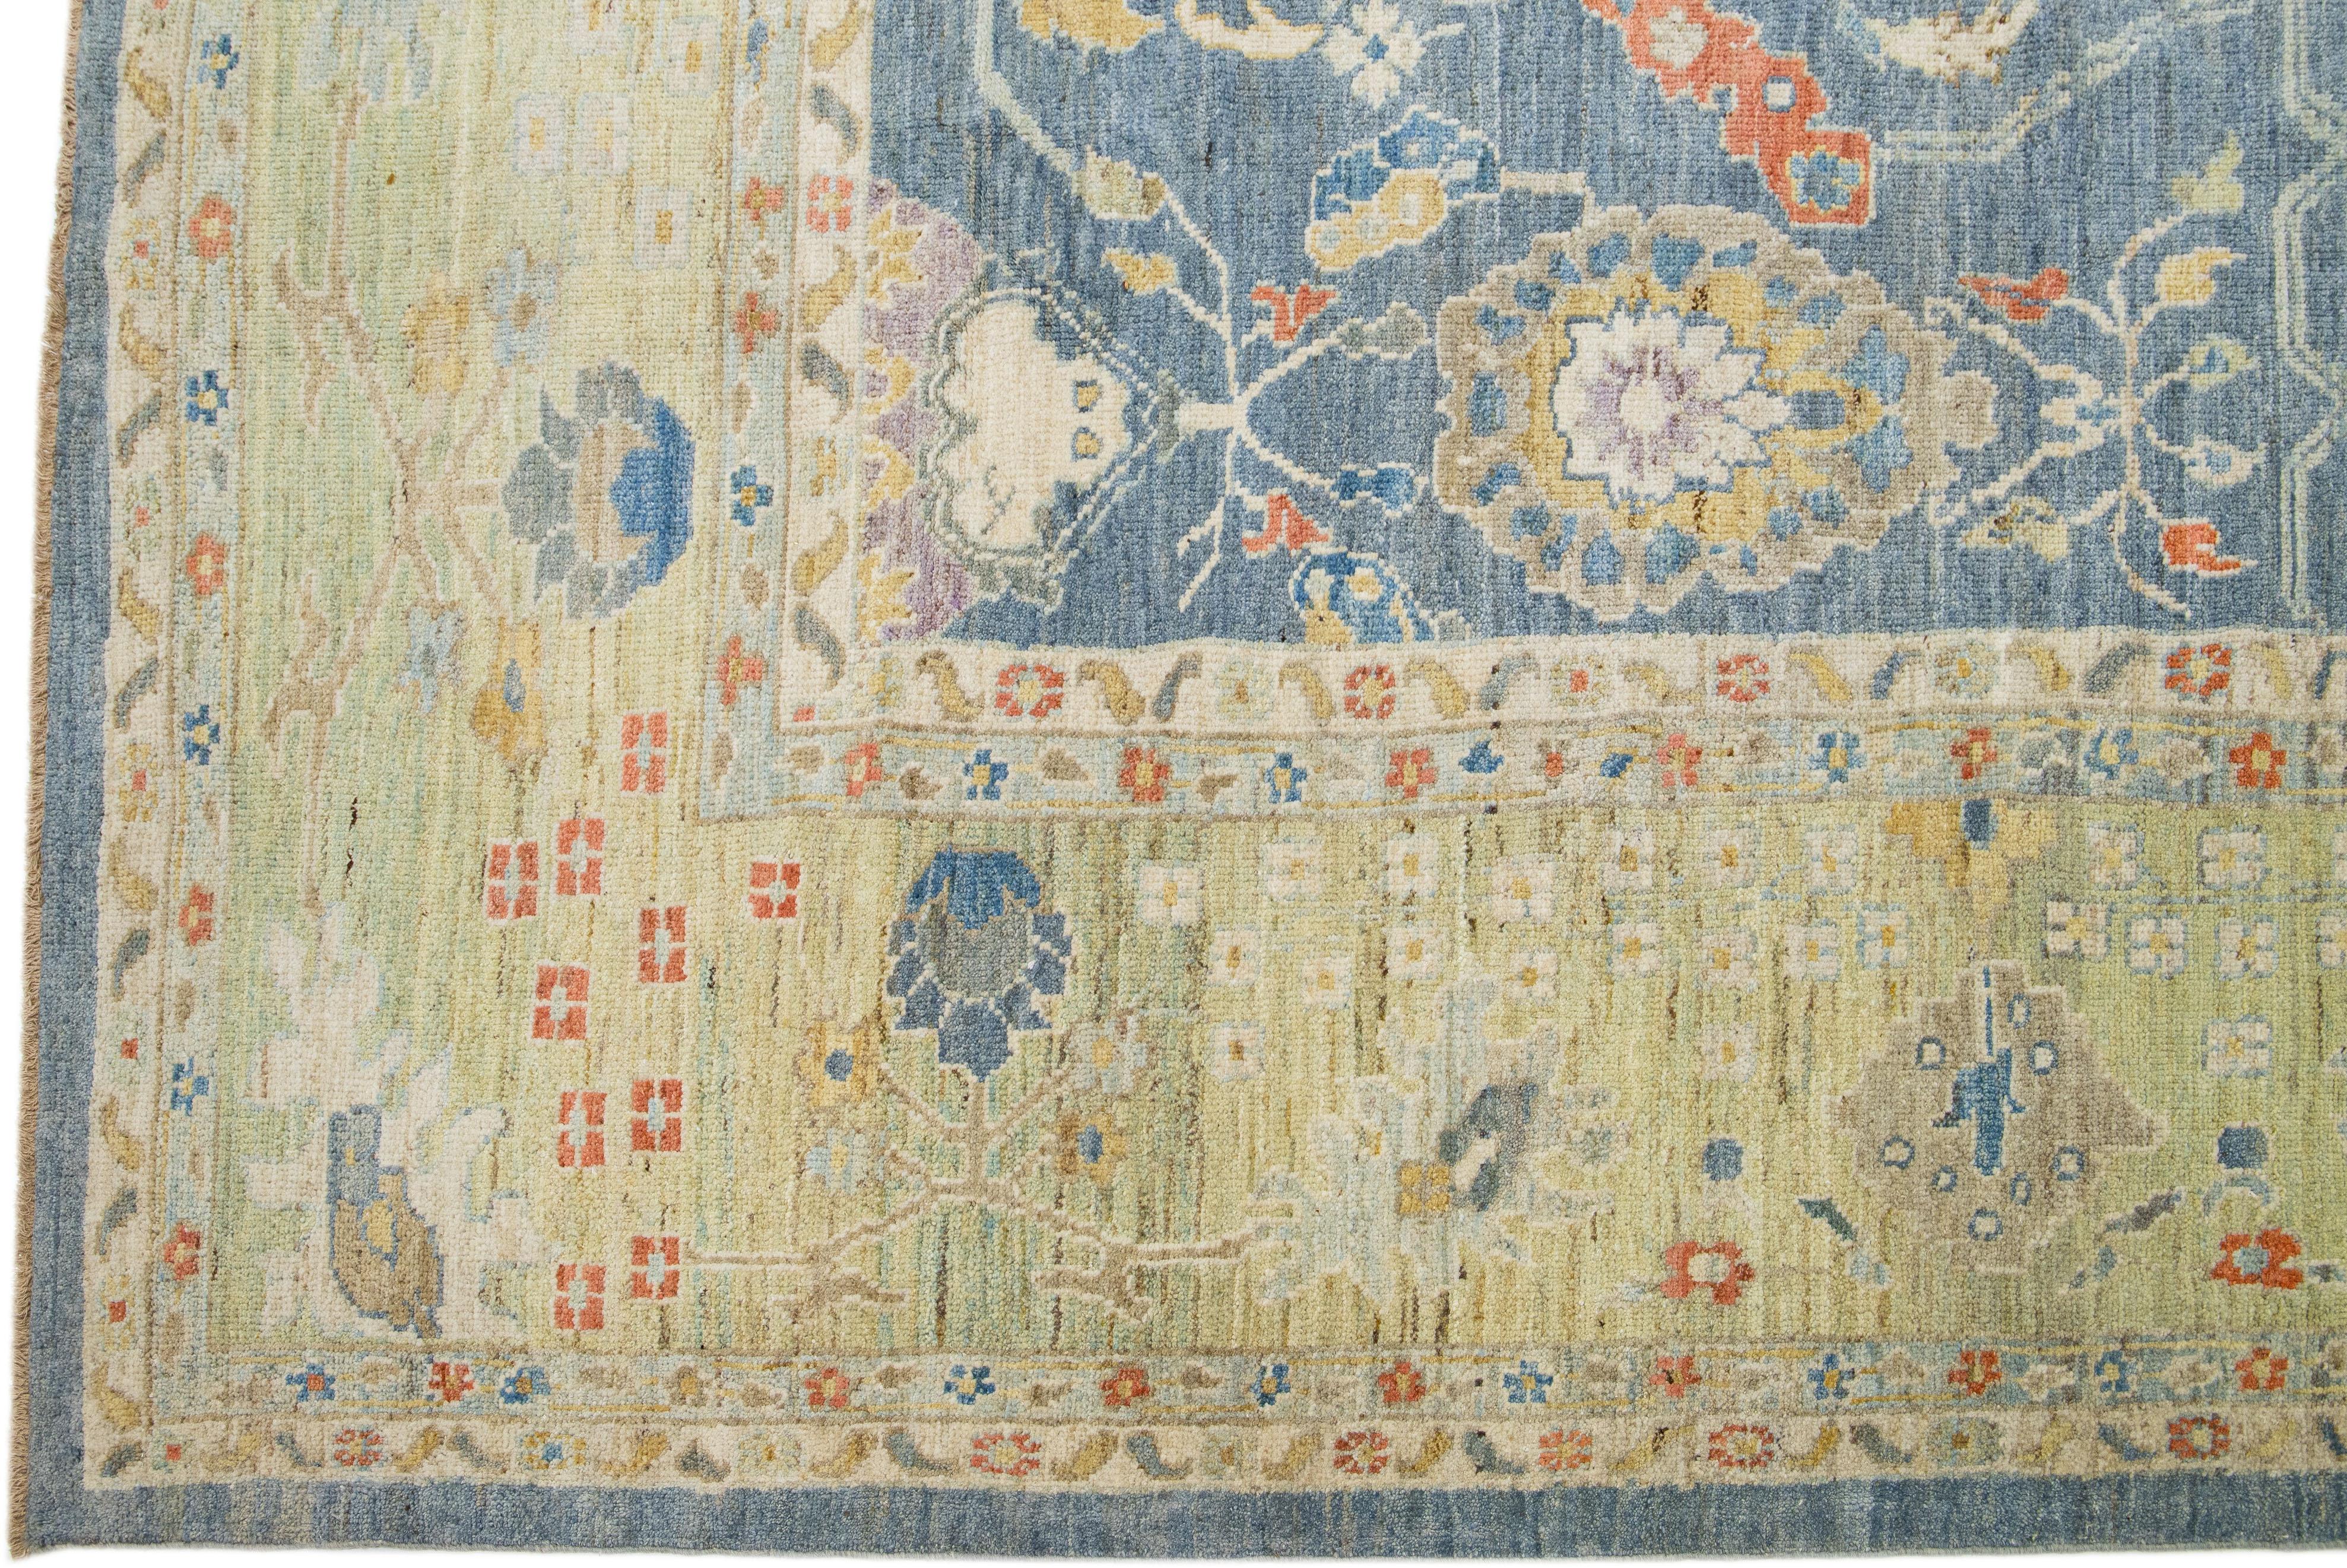 Diese zeitgenössische Interpretation des traditionellen Sultanabad-Stils wird in einem exquisiten, handgeknüpften Wollteppich in auffälligem Marineblau präsentiert. Ein aufwendig gestalteter Rahmen hebt das florale Motiv hervor, das mit mehrfarbigen